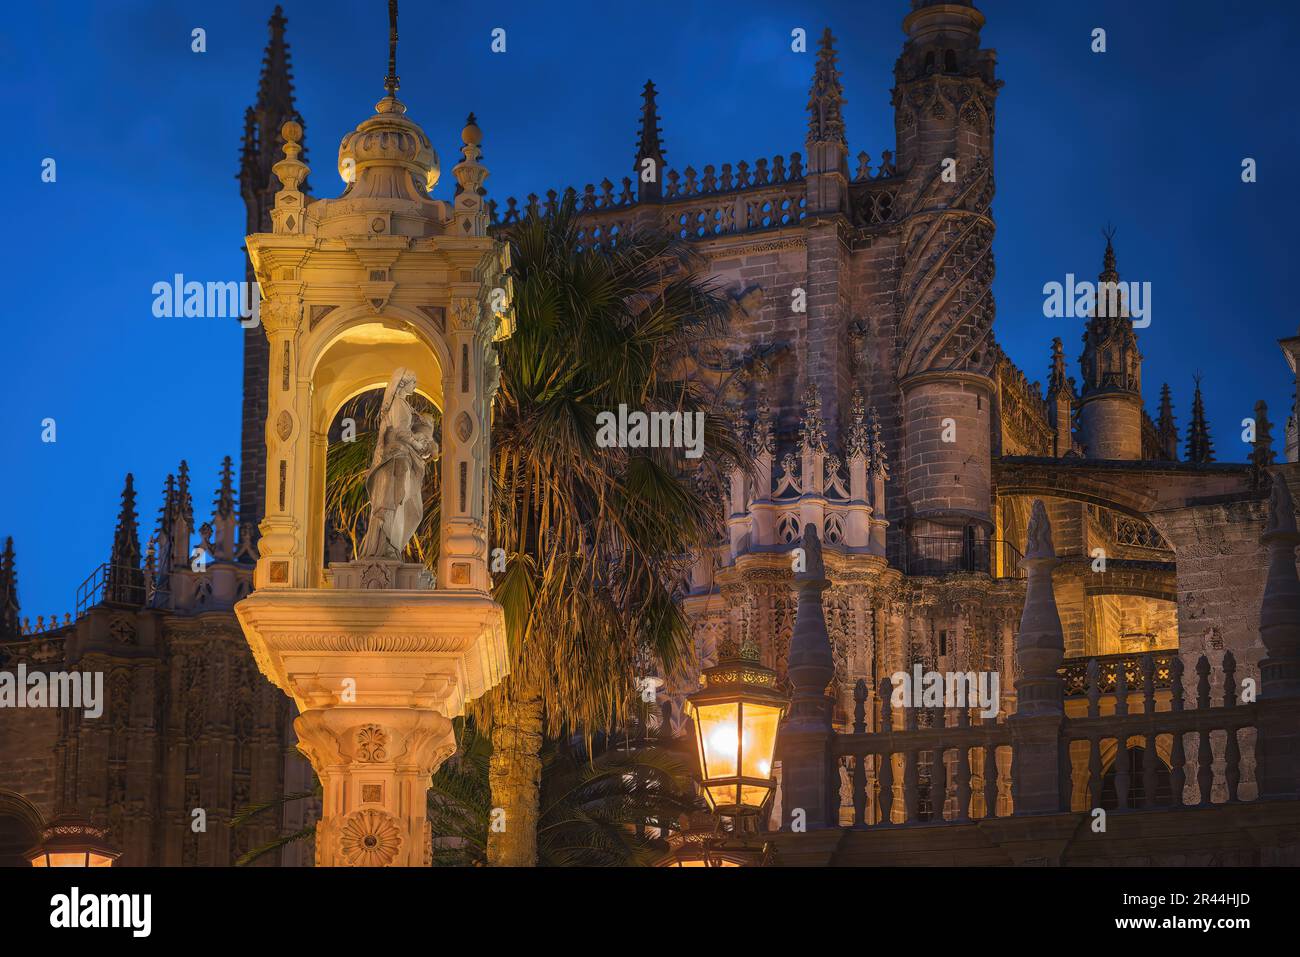 Tempel des Triumphes der Muttergottes der Schirmherrschaft (Templete del Triunfo) am Plaza del Triunfo bei Nacht - Sevilla, Andalusien, Spanien Stockfoto